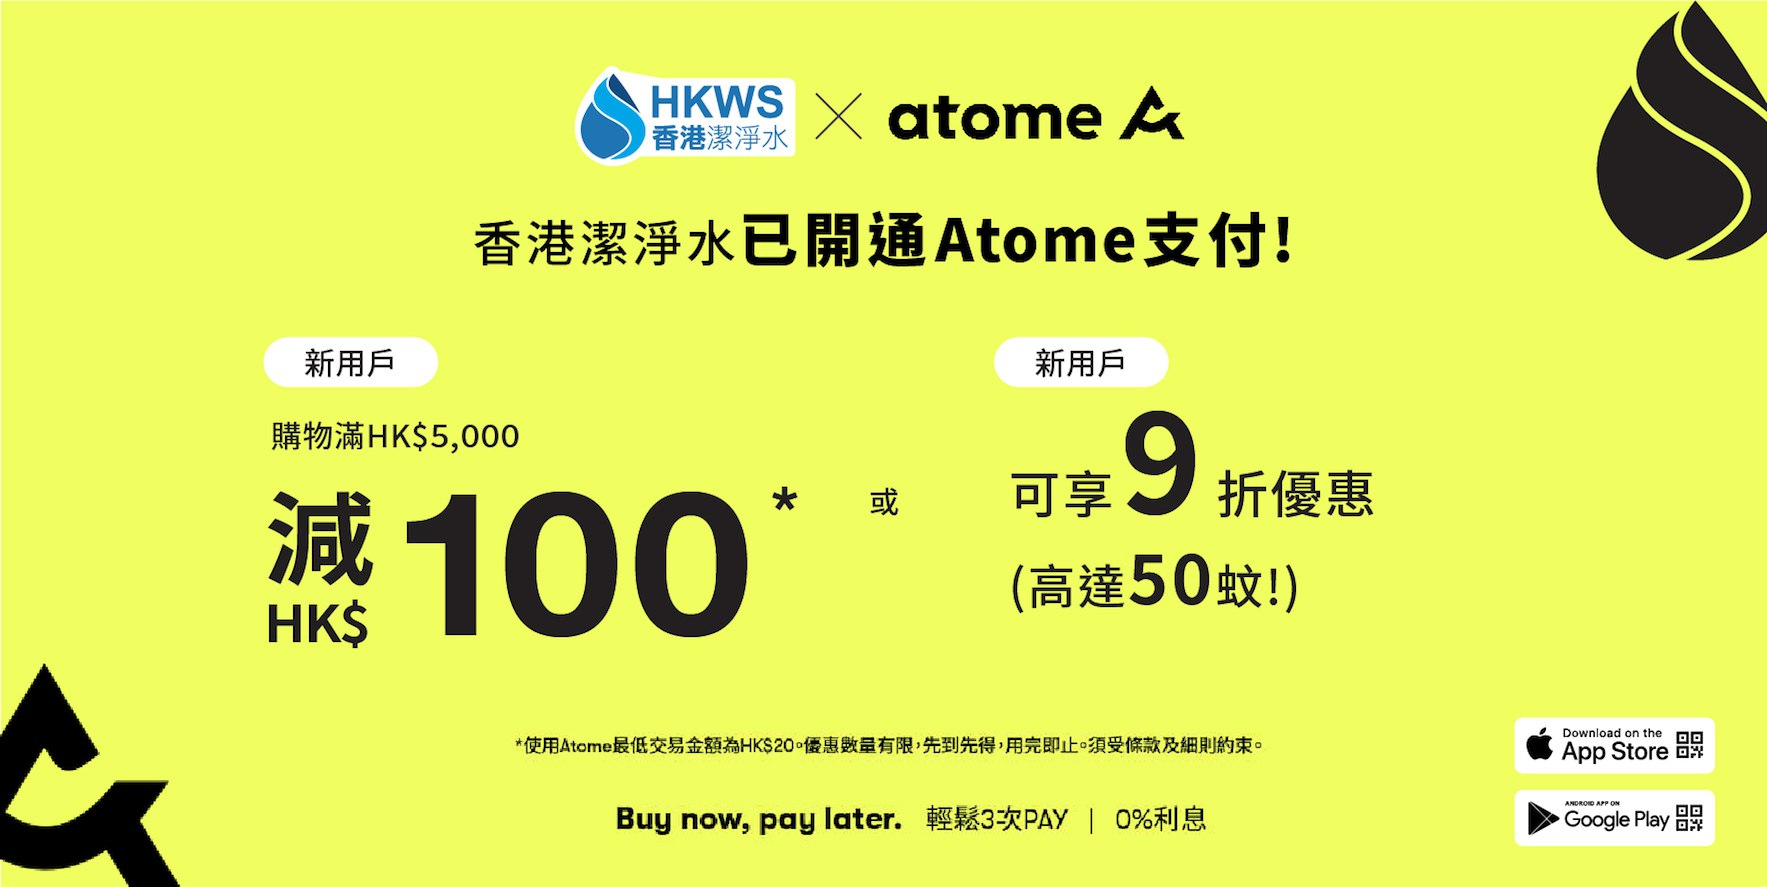 全新付款方式Atome，分3期免息分期付款，先享後付！